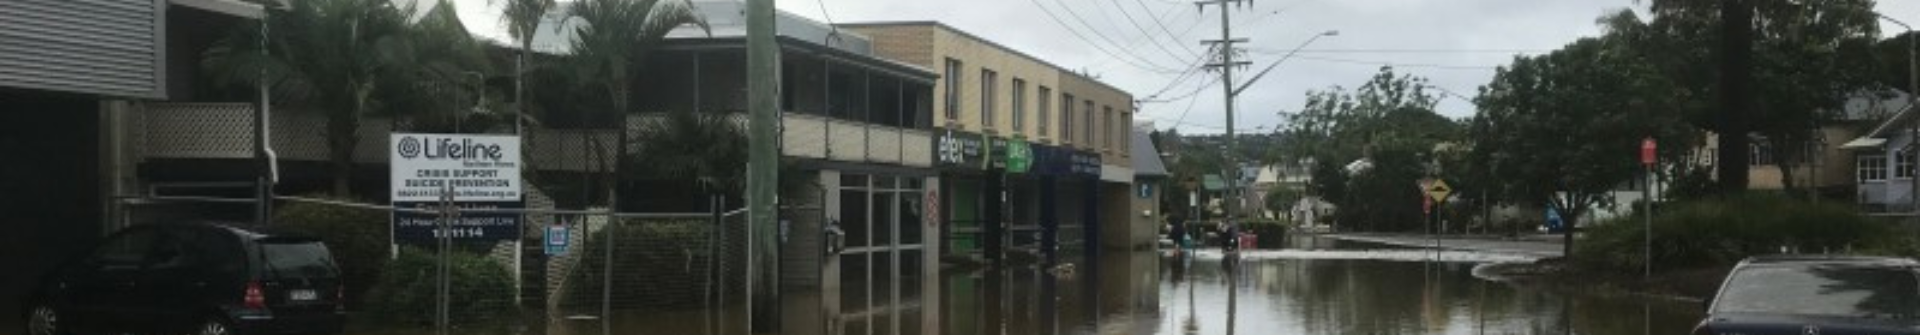 Lismore floods lifeline